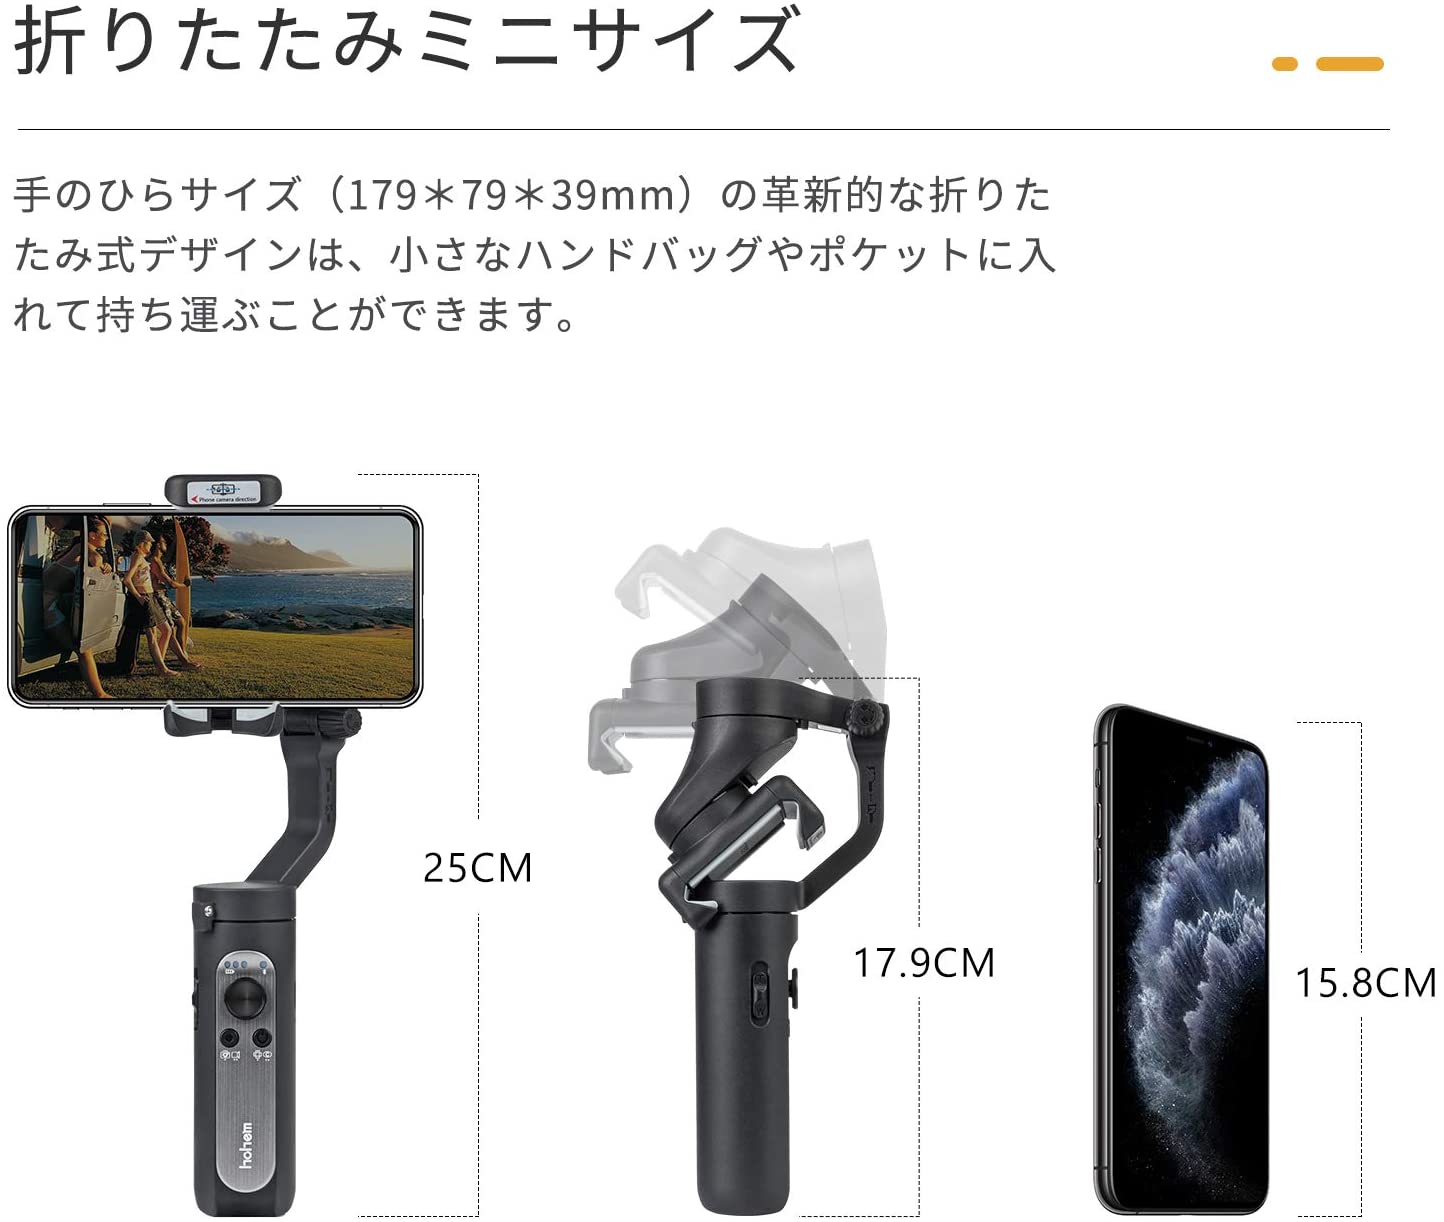 (在庫あり) Hohem iSteady X ブラック 3軸 ジンバル スタビライザー 自撮り棒 セルカ棒 スマホ スマートフォン iPhone Android 対応　※ 九州・北海道・沖縄・離島は配送エリア対象外です。 3